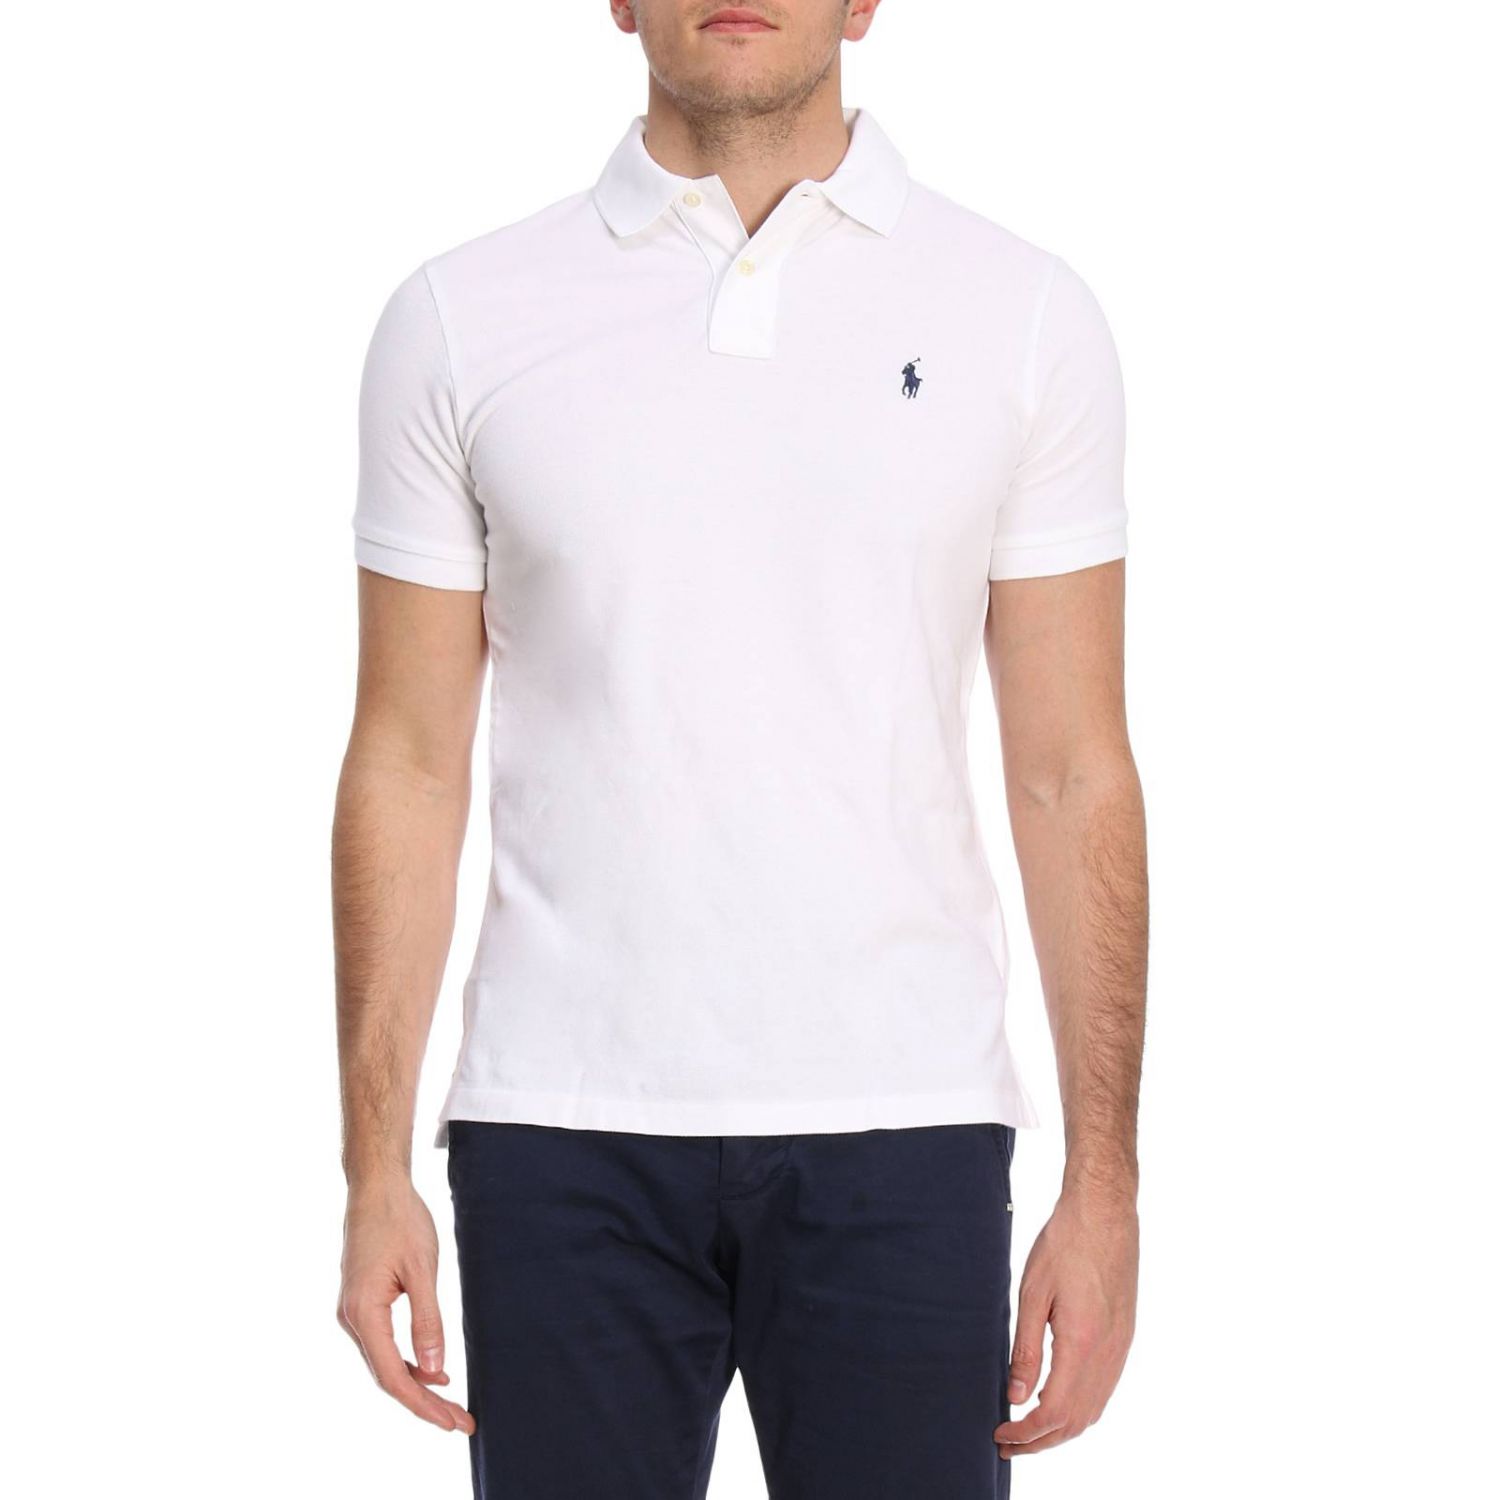 Polo Ralph Lauren Outlet: T-shirt men - White | T-Shirt Polo Ralph ...